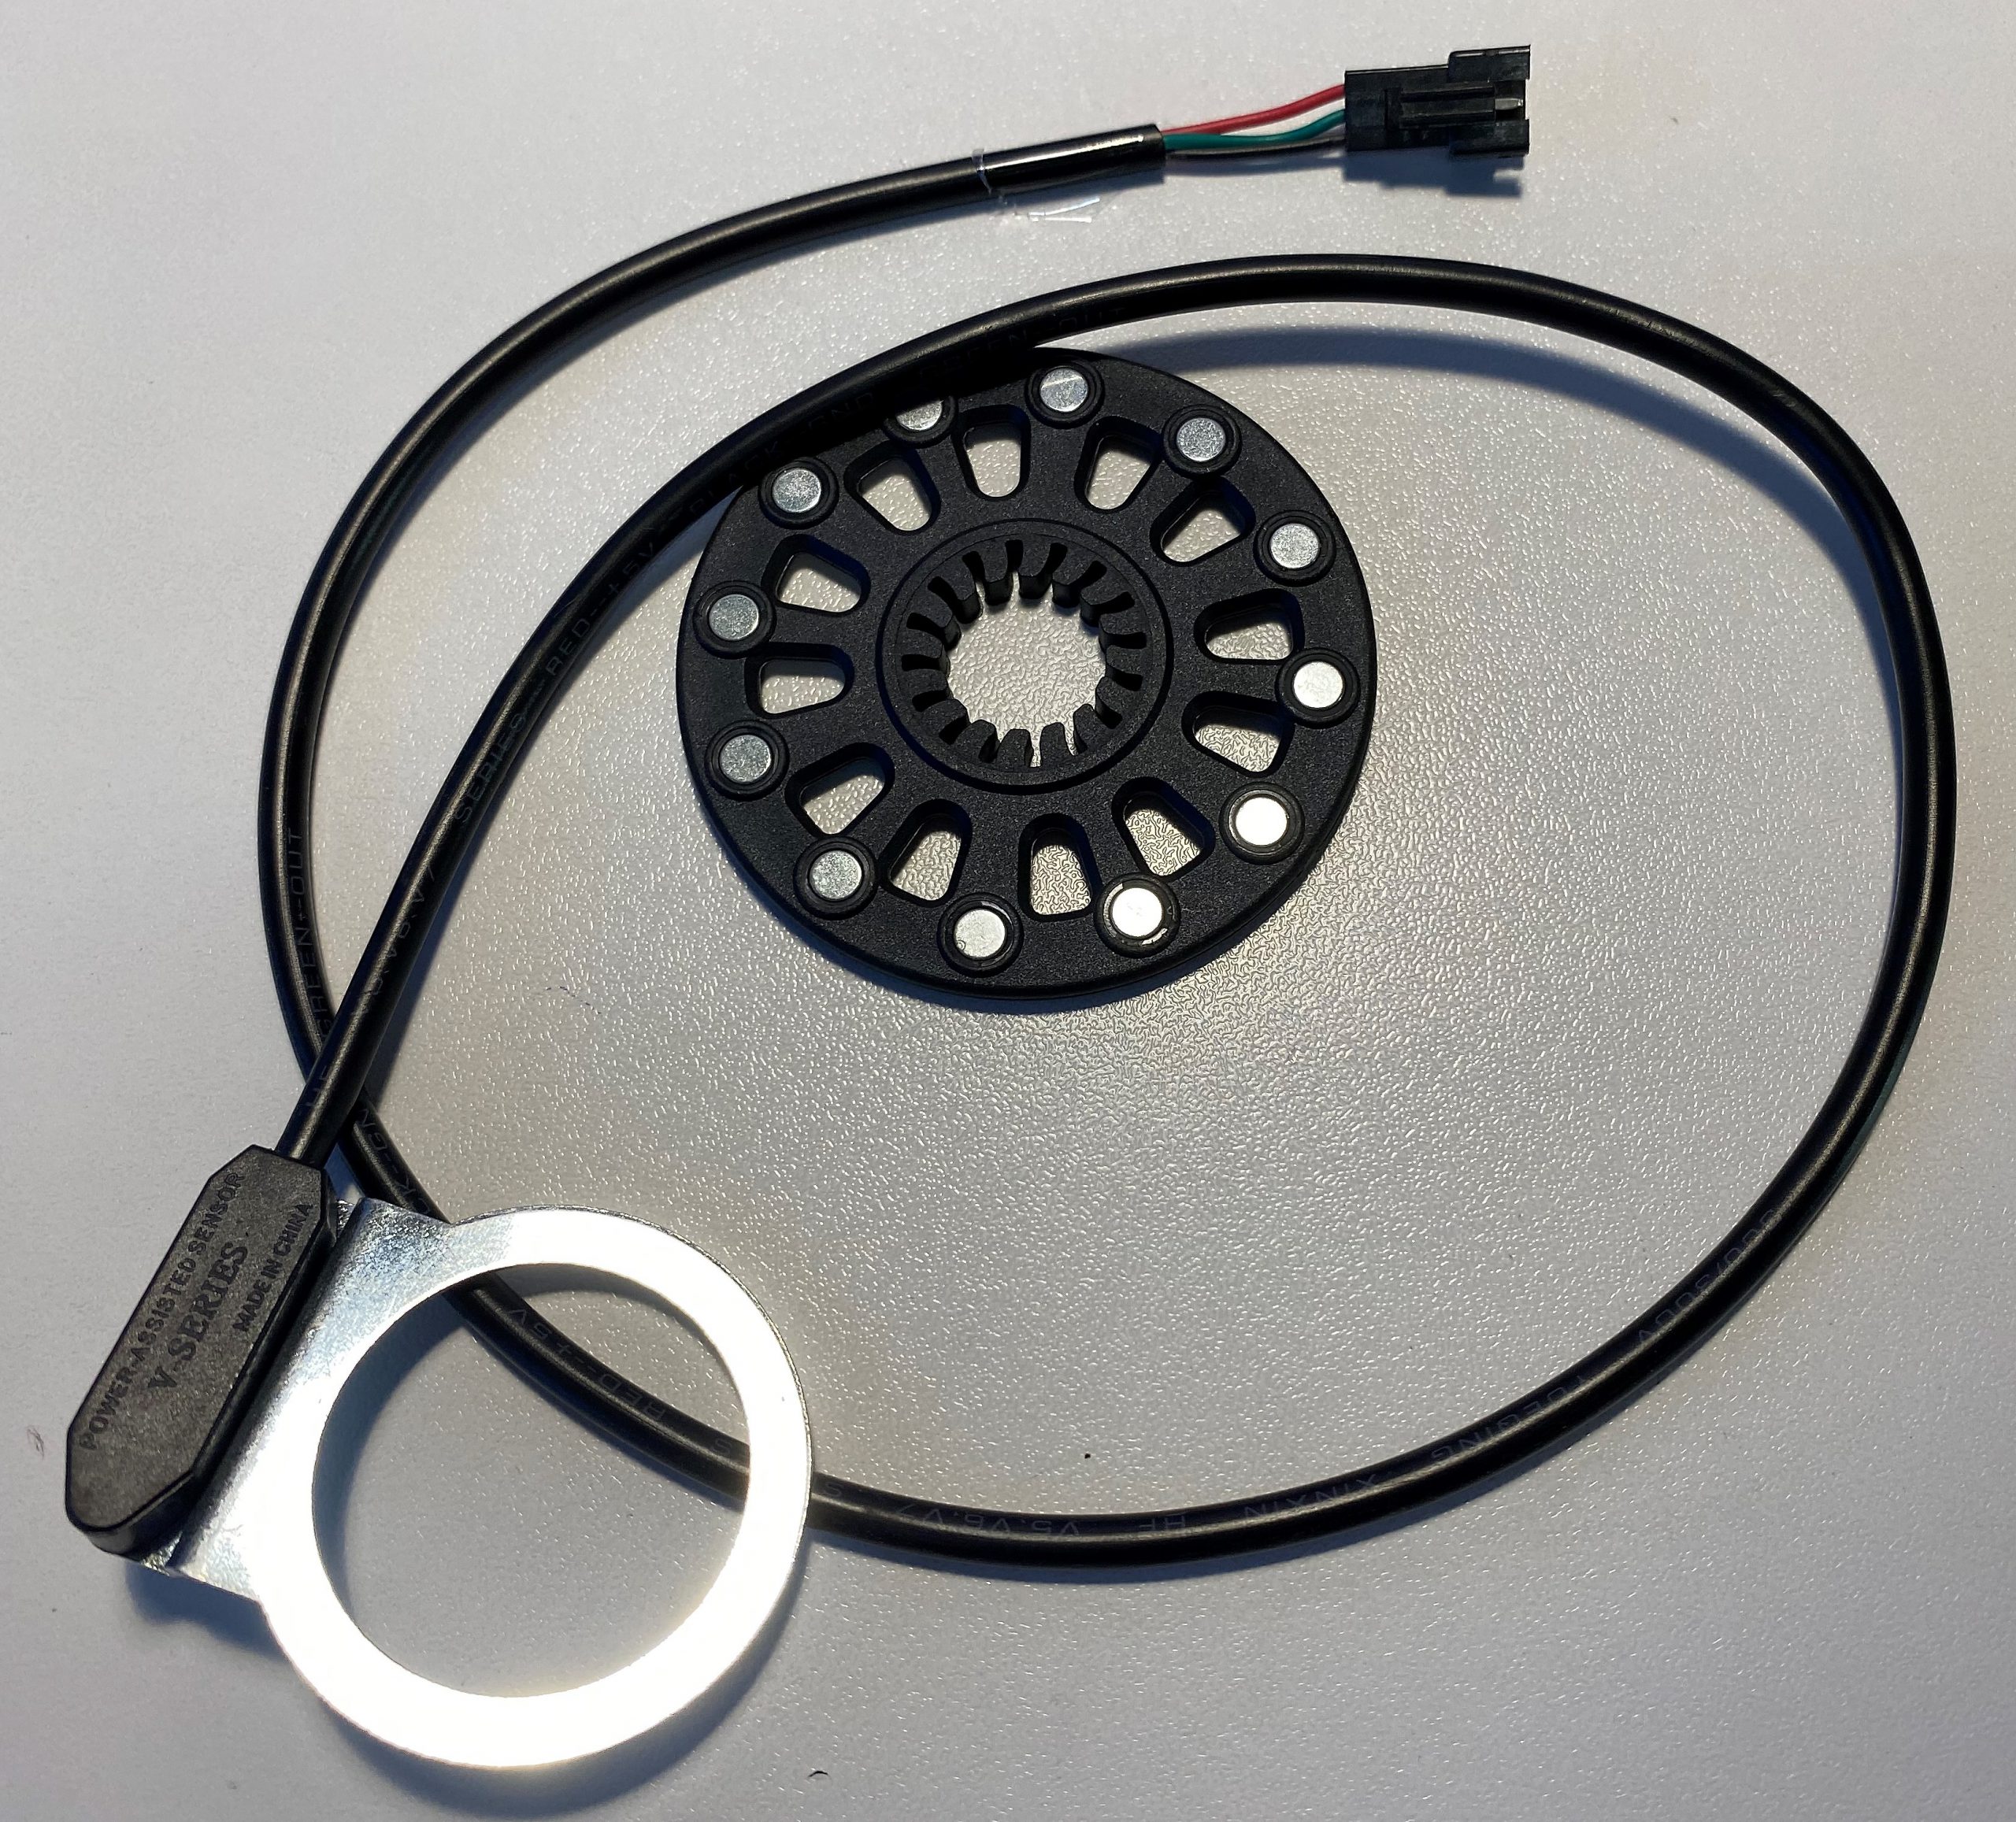 VGEBY Sensore di Potenza per Bicicletta KT-8Z Kit Elettrico modificato per Bicicletta con Otto Accessori per sensore di Potenza a Punto Magnetico Connettore Sensore per Pedale Bici 